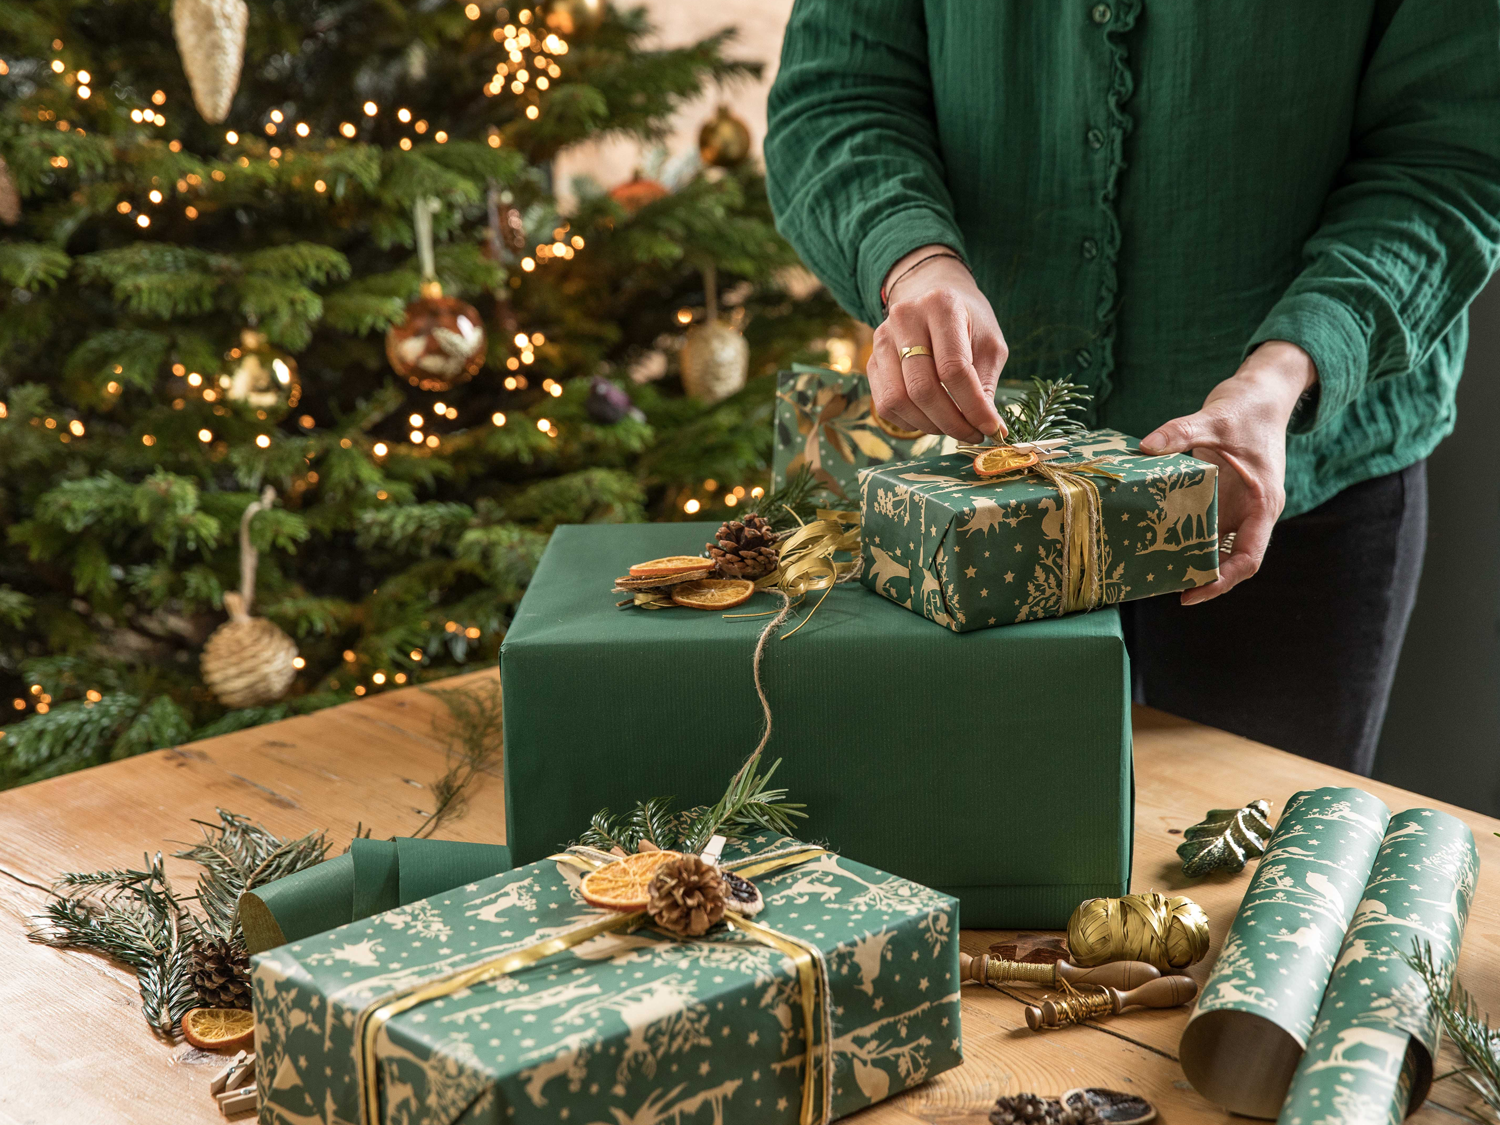 emballer des cadeaux de Noël au style nature et avec des éléments de la foret